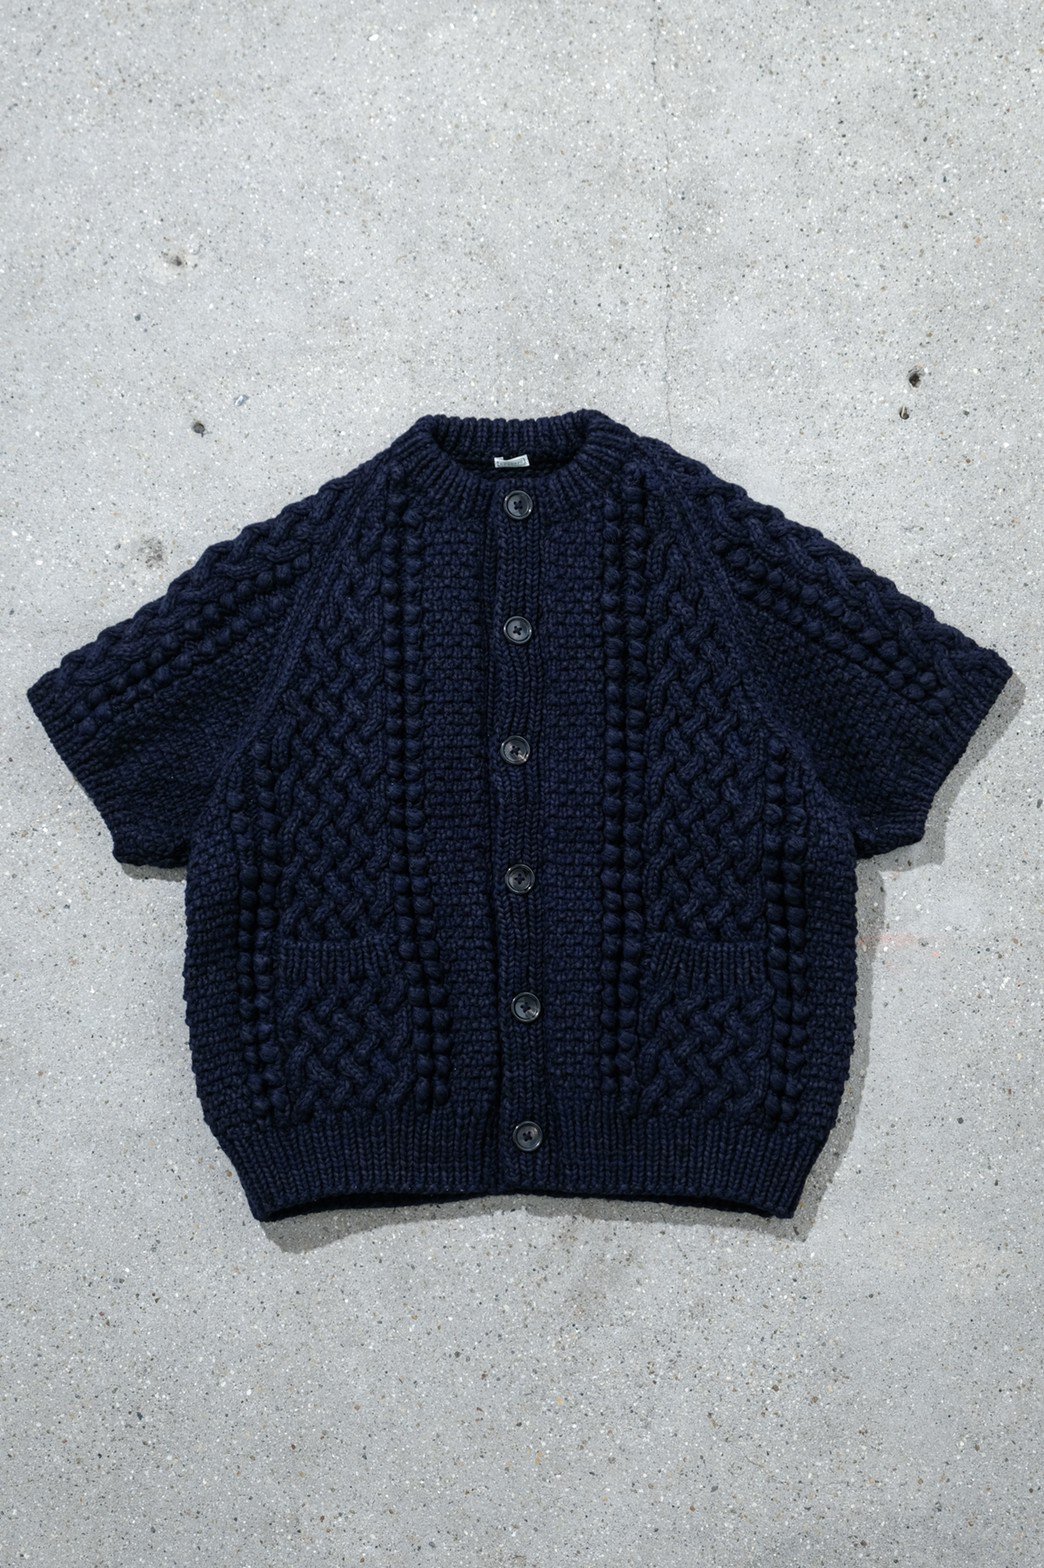 A.PRESSE / S/S Hand Knit Aran Sweater